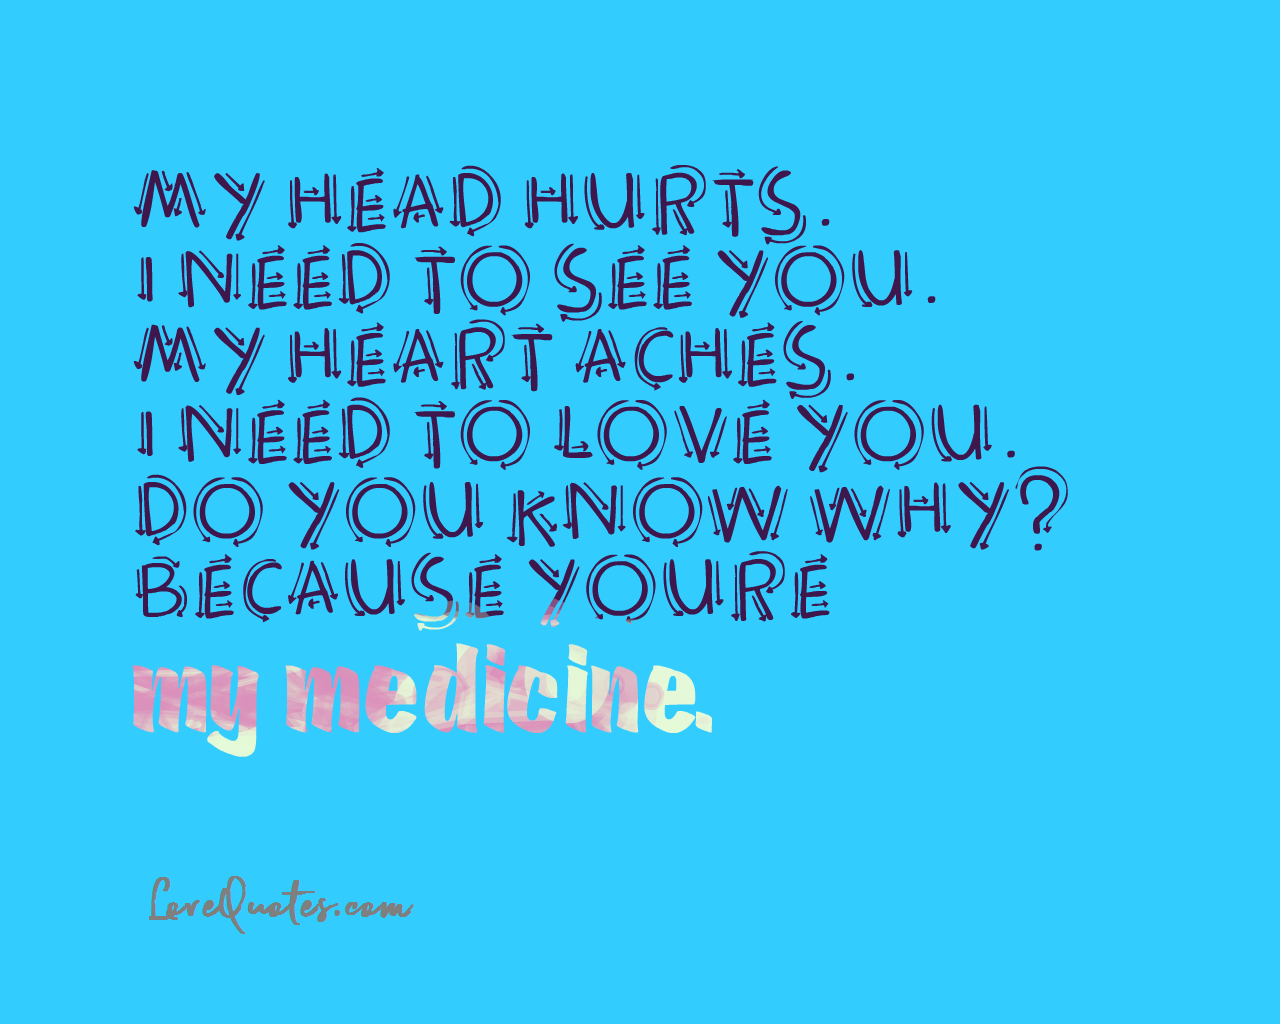 You’re My Medicine